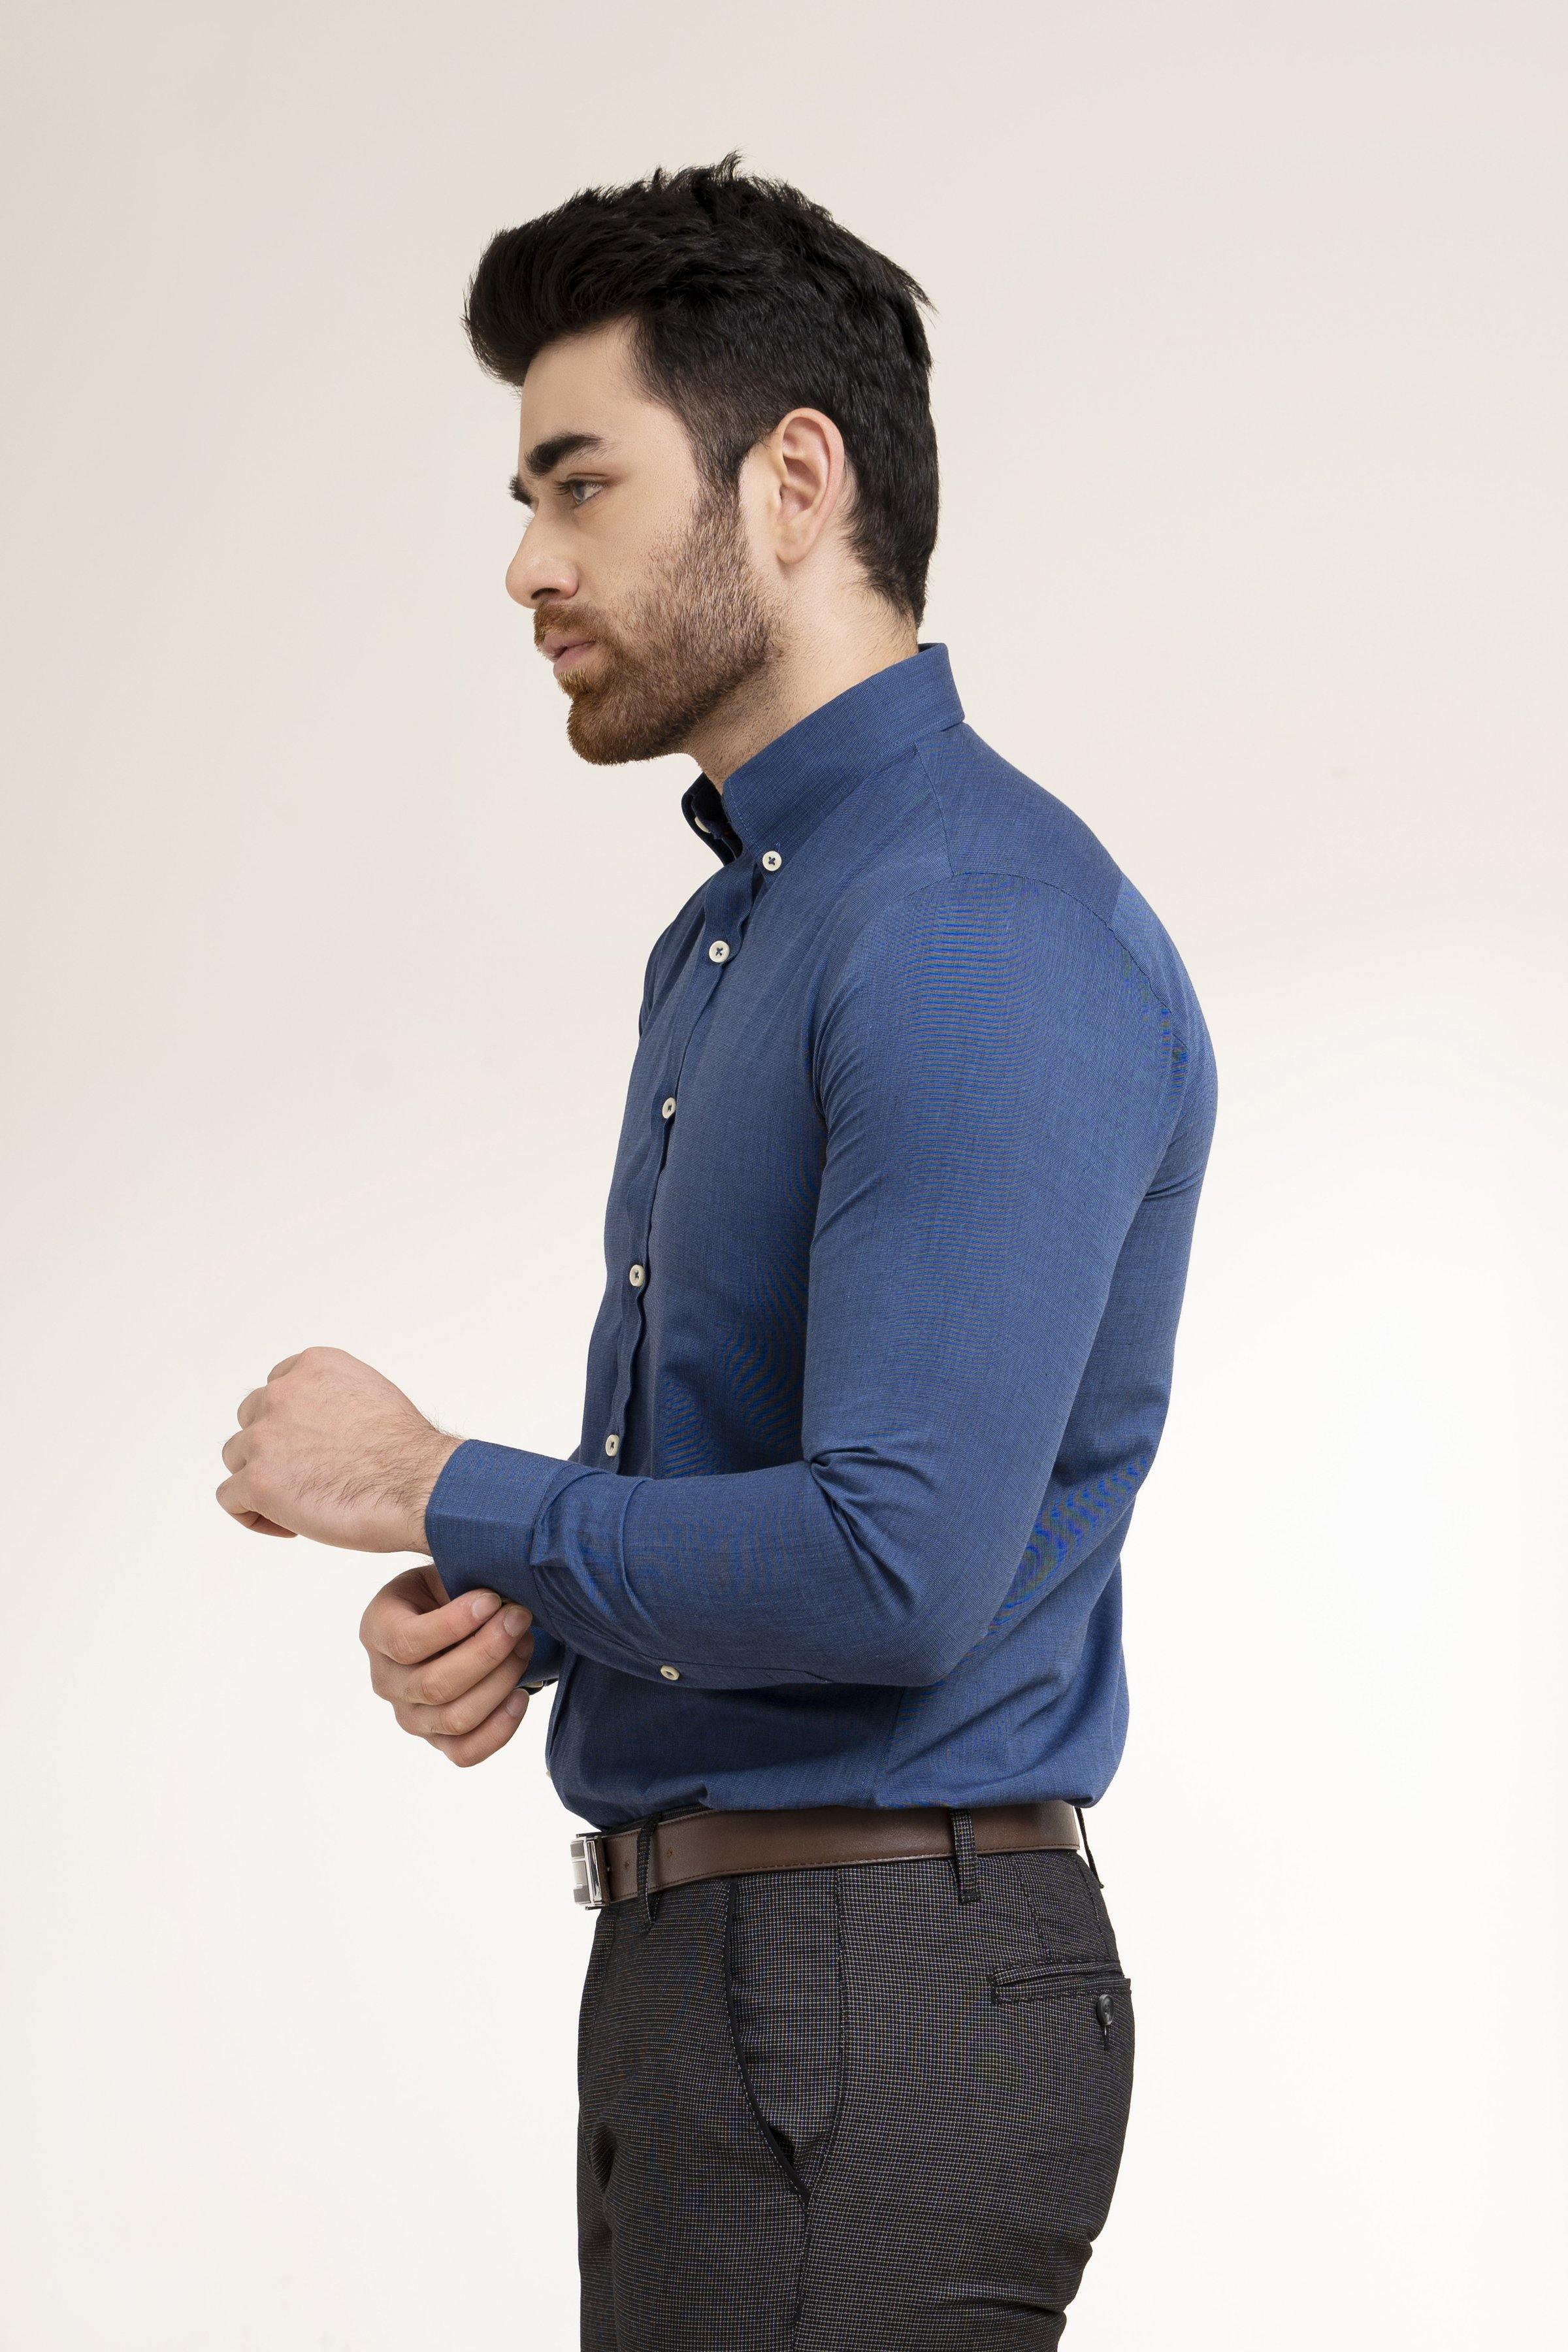 SMART SHIRT NAVY BLUE at Charcoal Clothing